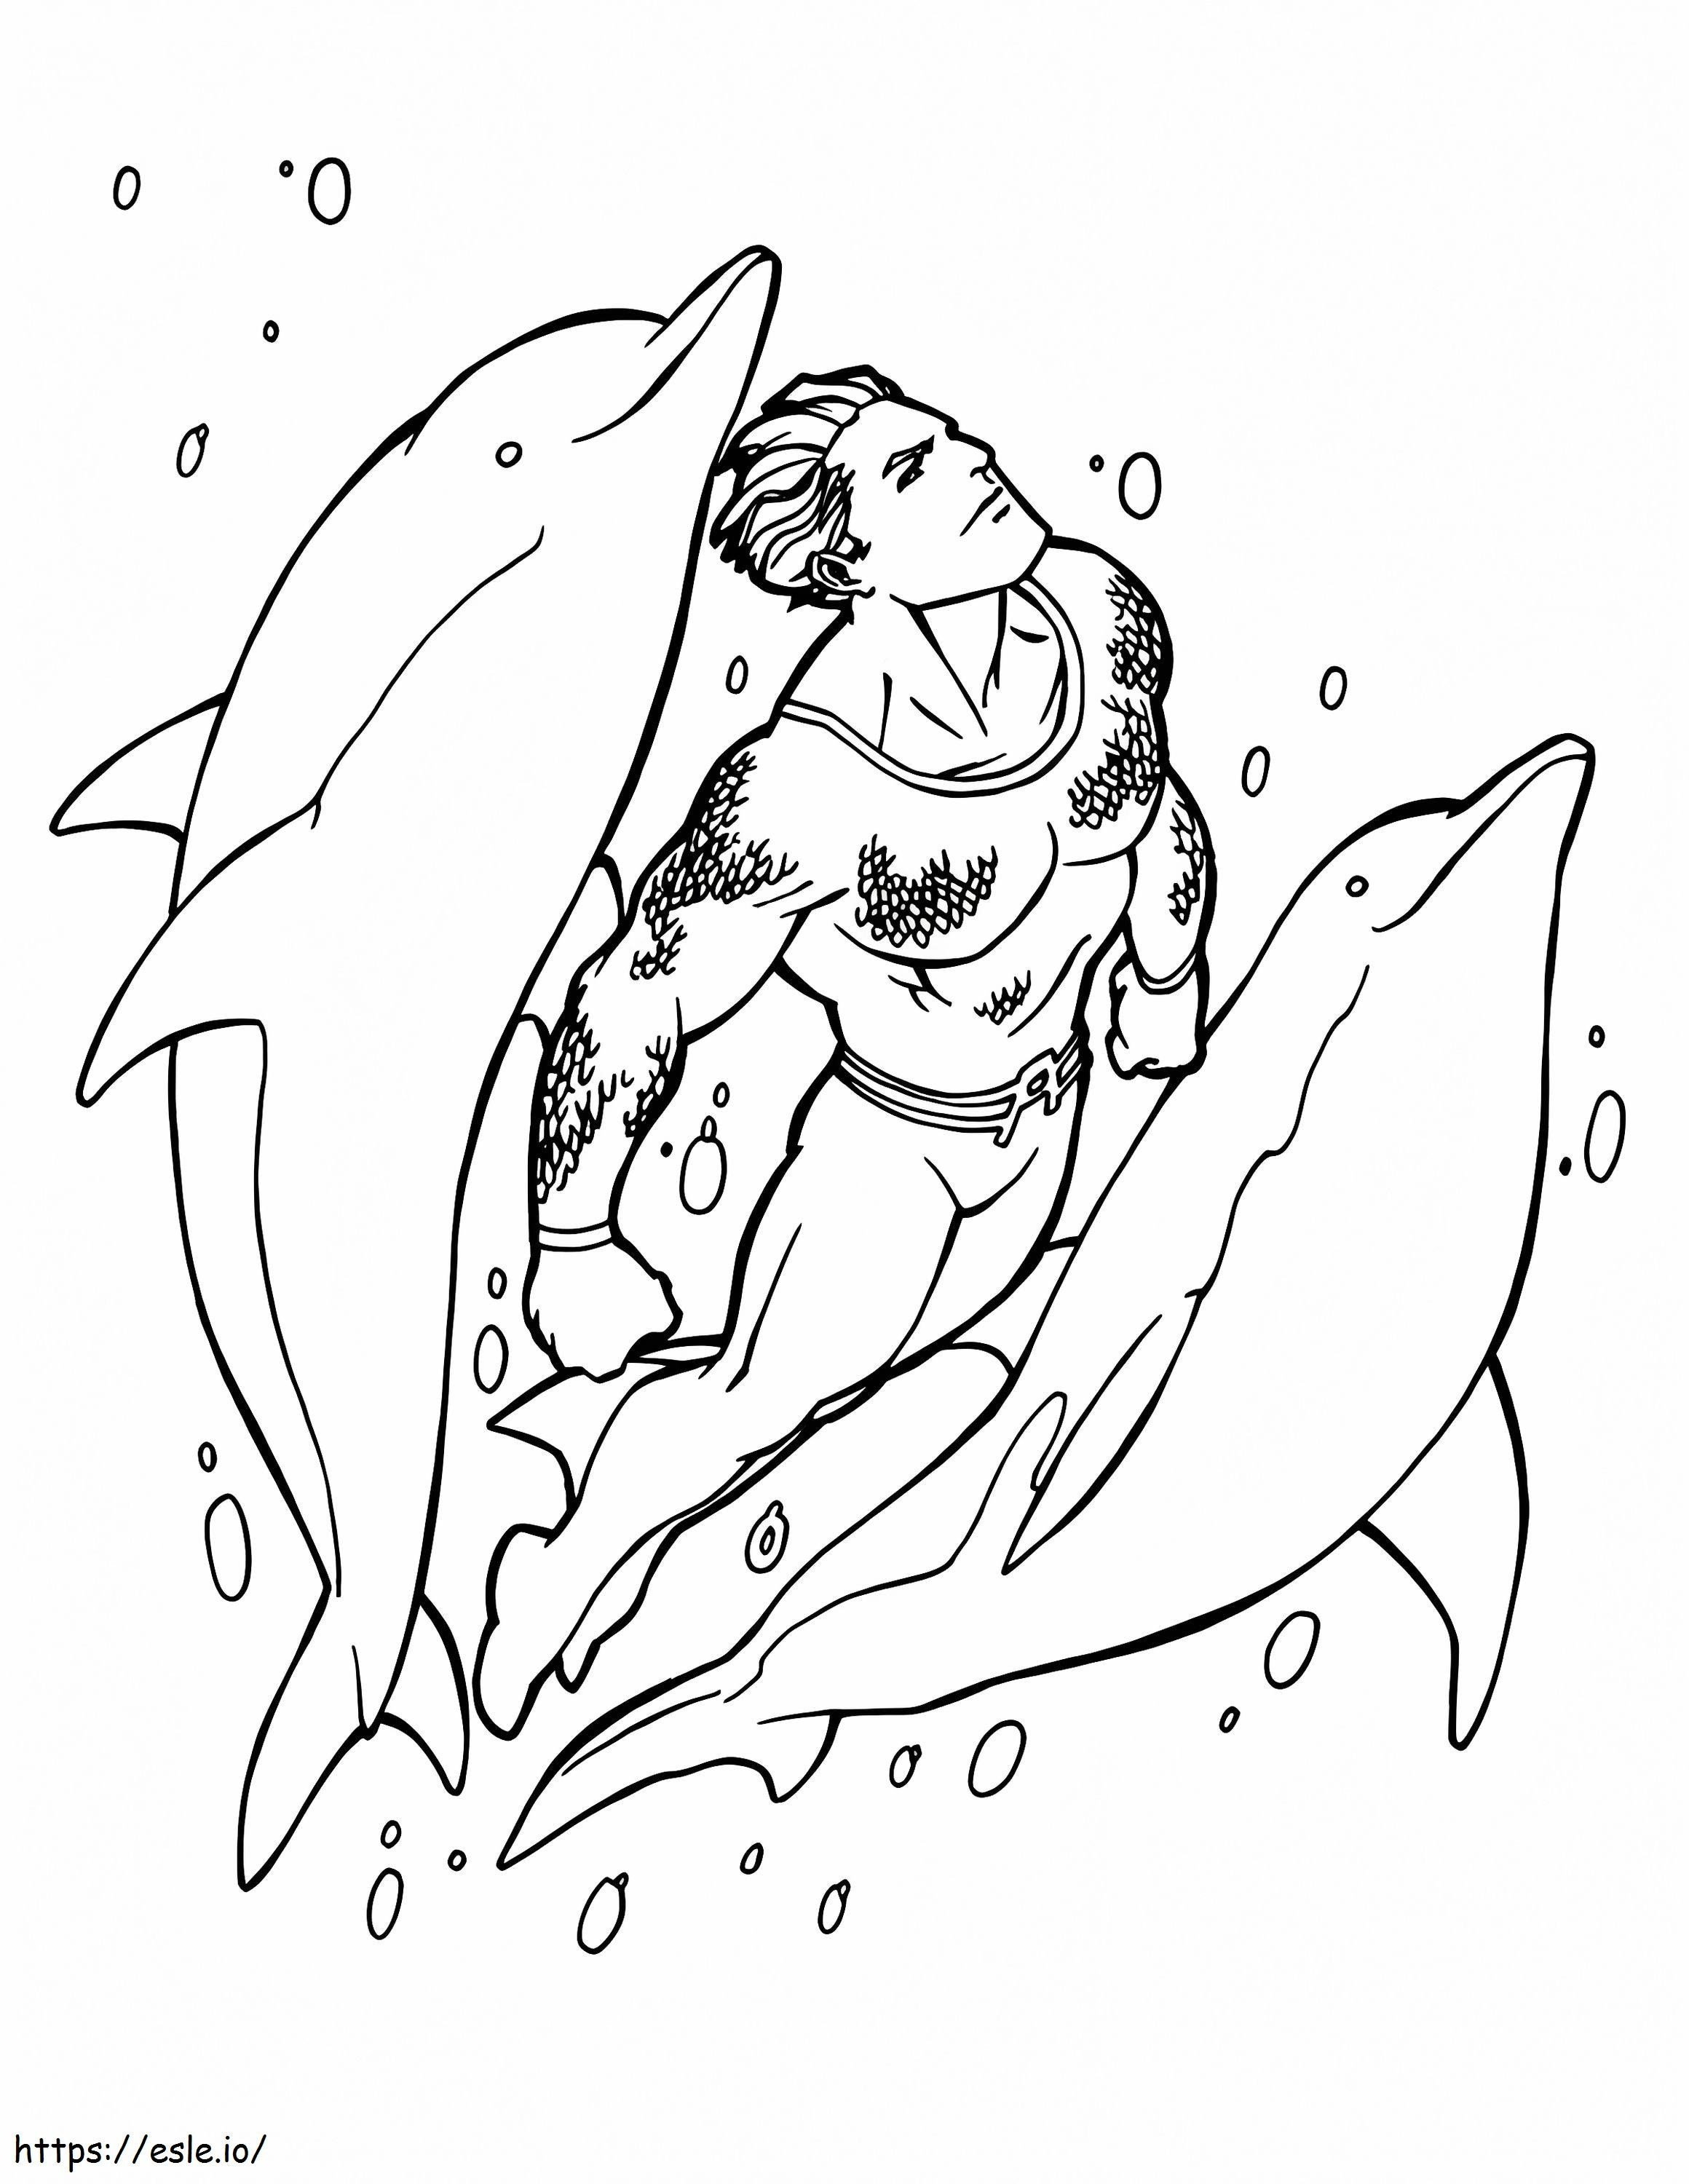 Aquaman nadando y dos delfines para colorear